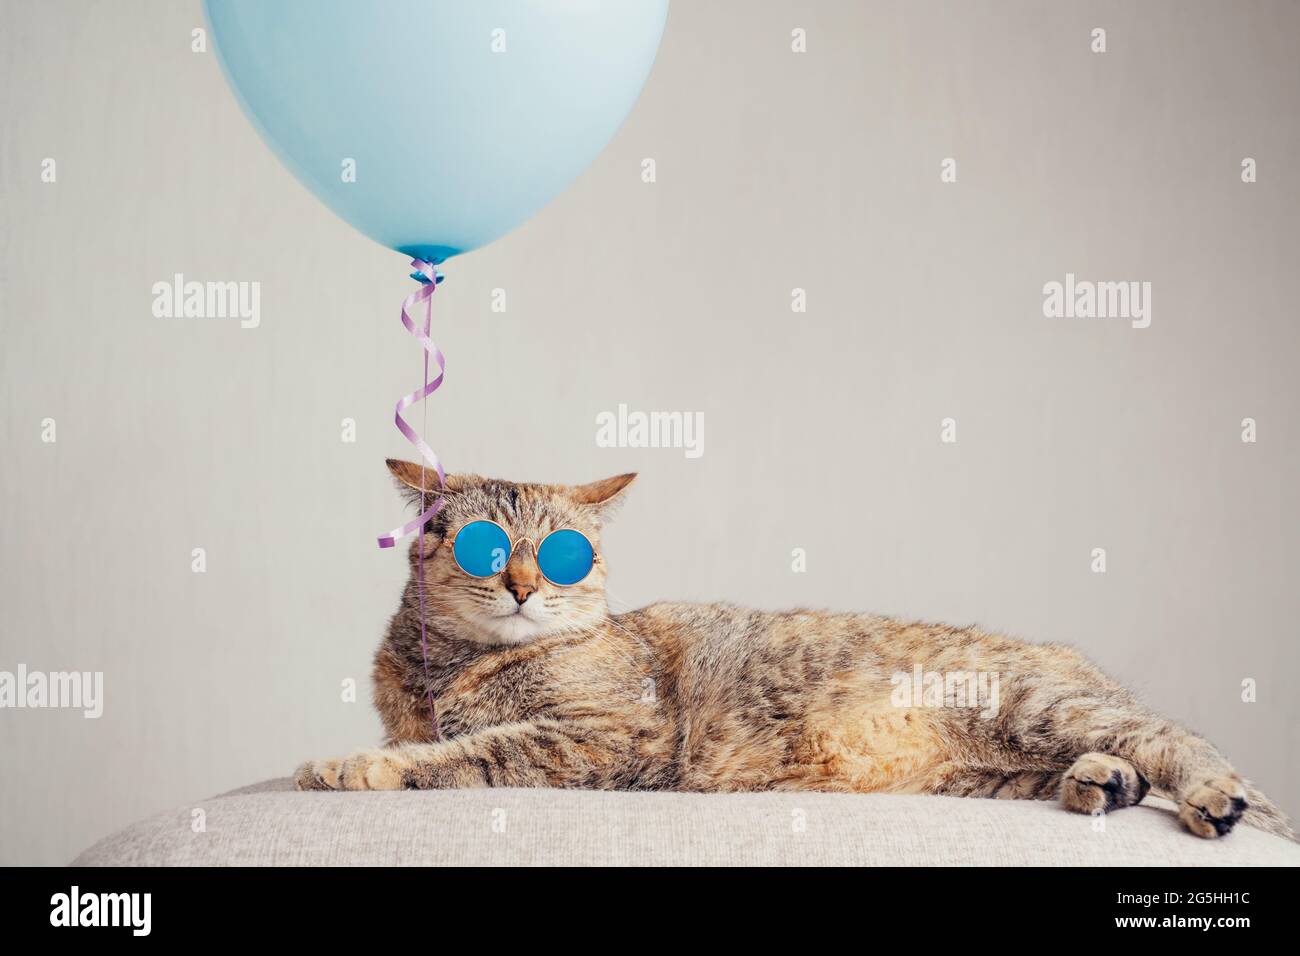 Ingwer-Katze in trendigen Sonnenbrillen, die neben einem blauen Ballon auf einer Couch liegt. Stockfoto